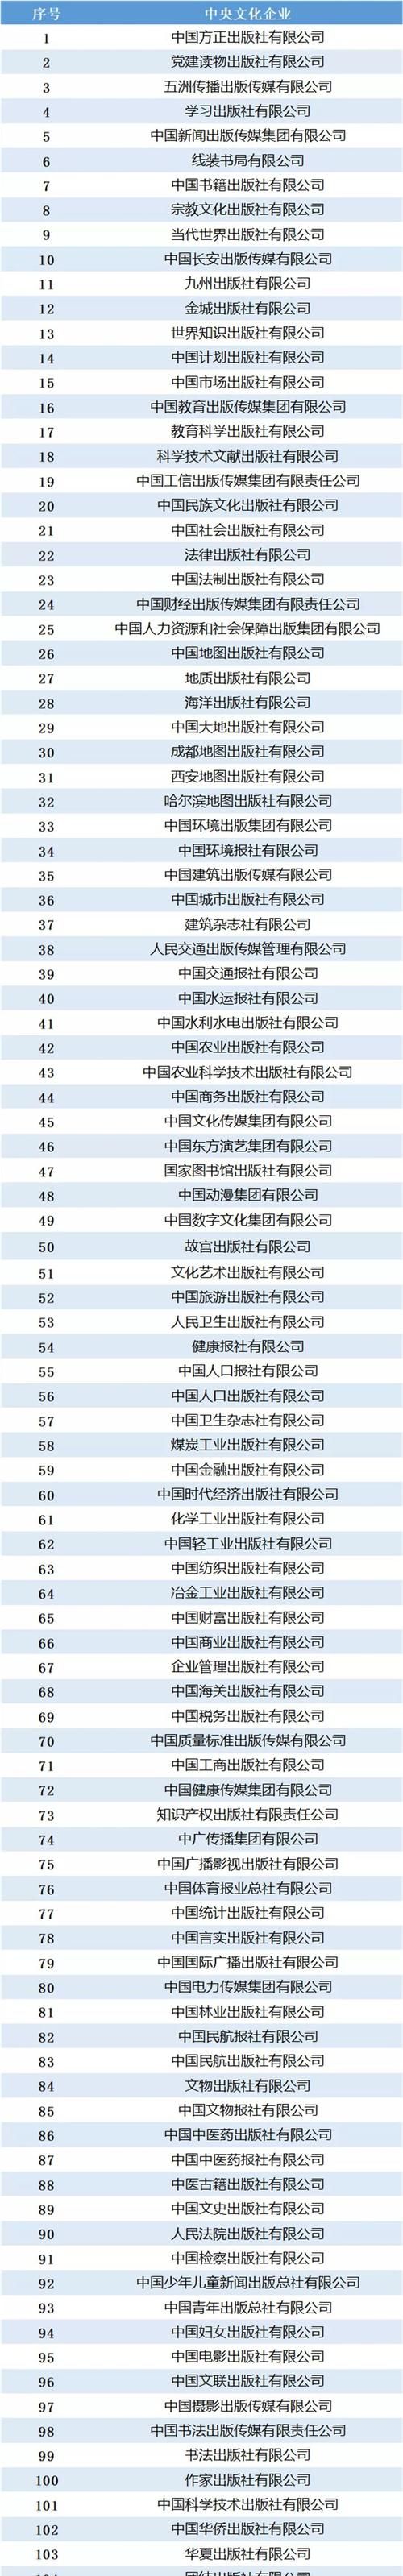 央企排名00名名单,中国有哪些中央企业图1